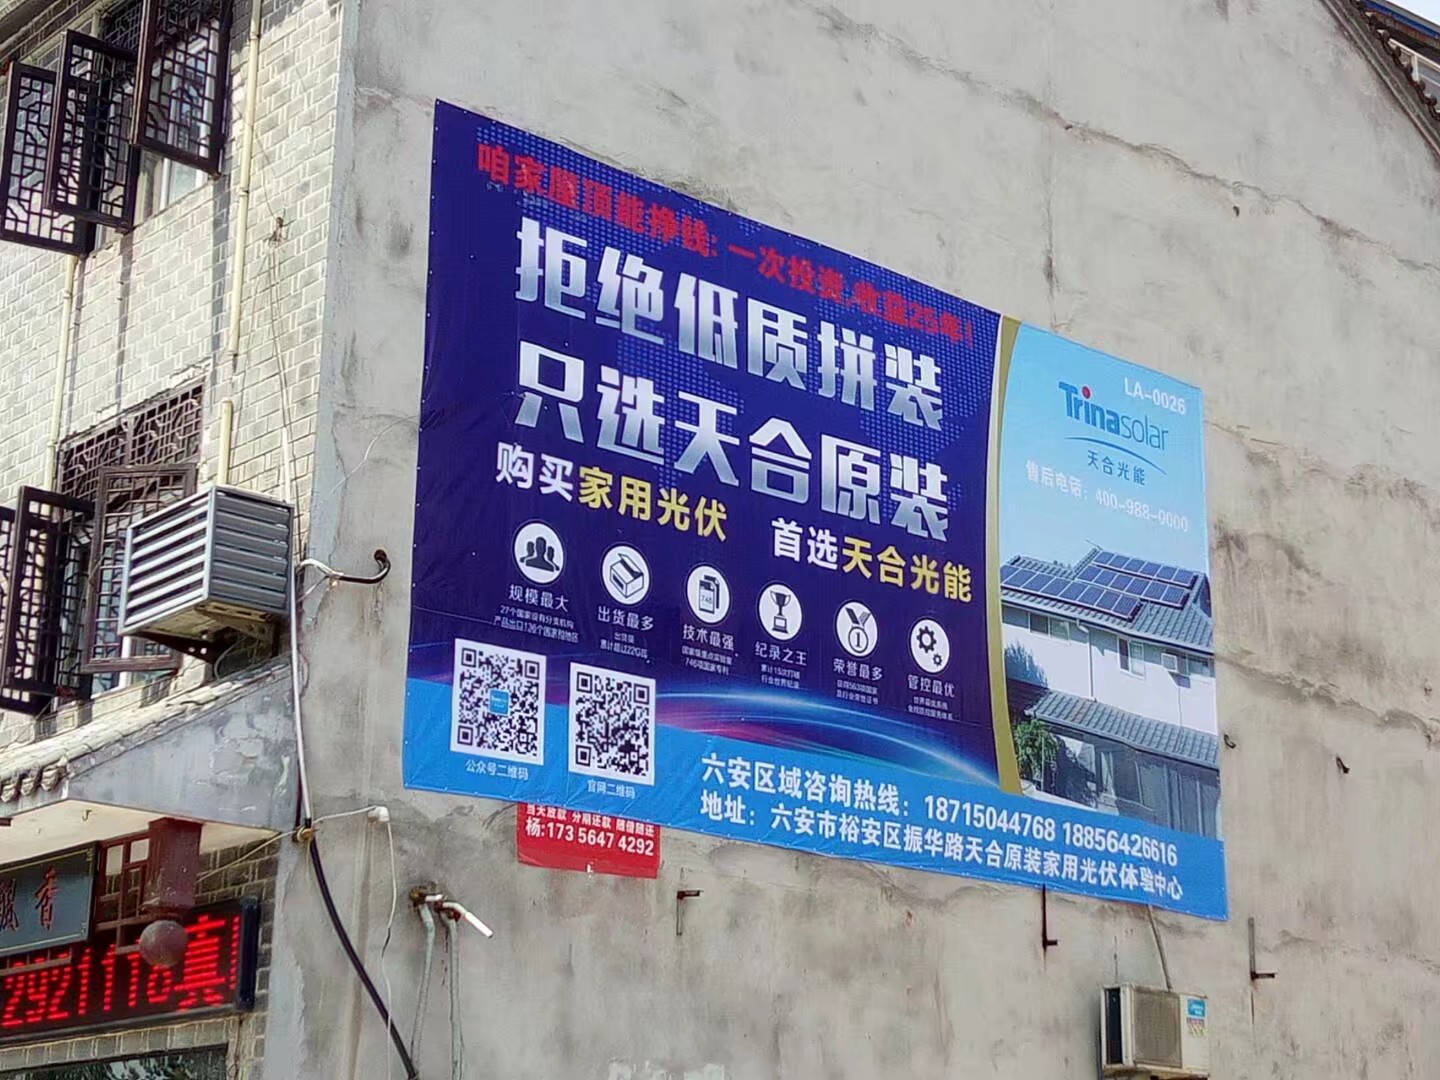 上海领投广告传媒有限公司 济南墙体广告,济南刷墙广告,济南喷绘广告